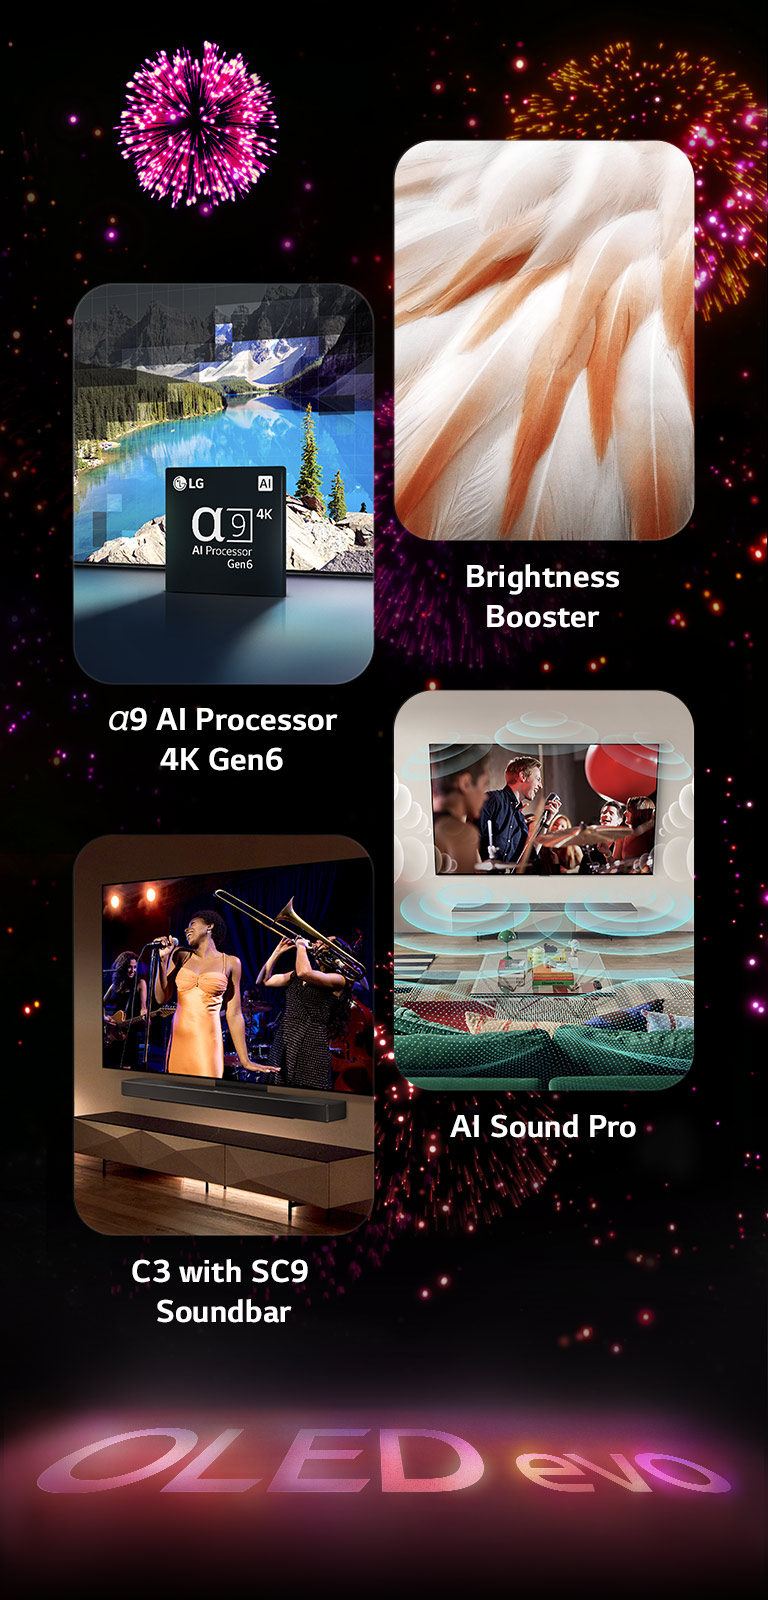 一張圖片展示了 LG OLED evo C3 的主要功能，背景為黑色，並帶有粉紅色和紫色的煙花表演。 地面上煙花匯演的粉紅色反射出「OLED evo」字樣。 圖片中，描繪 α9 Gen6 4K AI 處理器 的芯片正在一張使用處理技術重新製作的湖景圖片前。代表 Brightness Booster Max 的圖像顯示了一隻具有高對比度和明亮白色的鳥。代表 LG Soundbar SC9S 的圖片顯示了 LG OLED evo C3 與 SC9S 整齊地掛在牆上，電視上正在播放音樂會。 一張代表 AI Sound Pro 的圖片展示了音樂氣泡描繪了充滿生活空間的聲波。